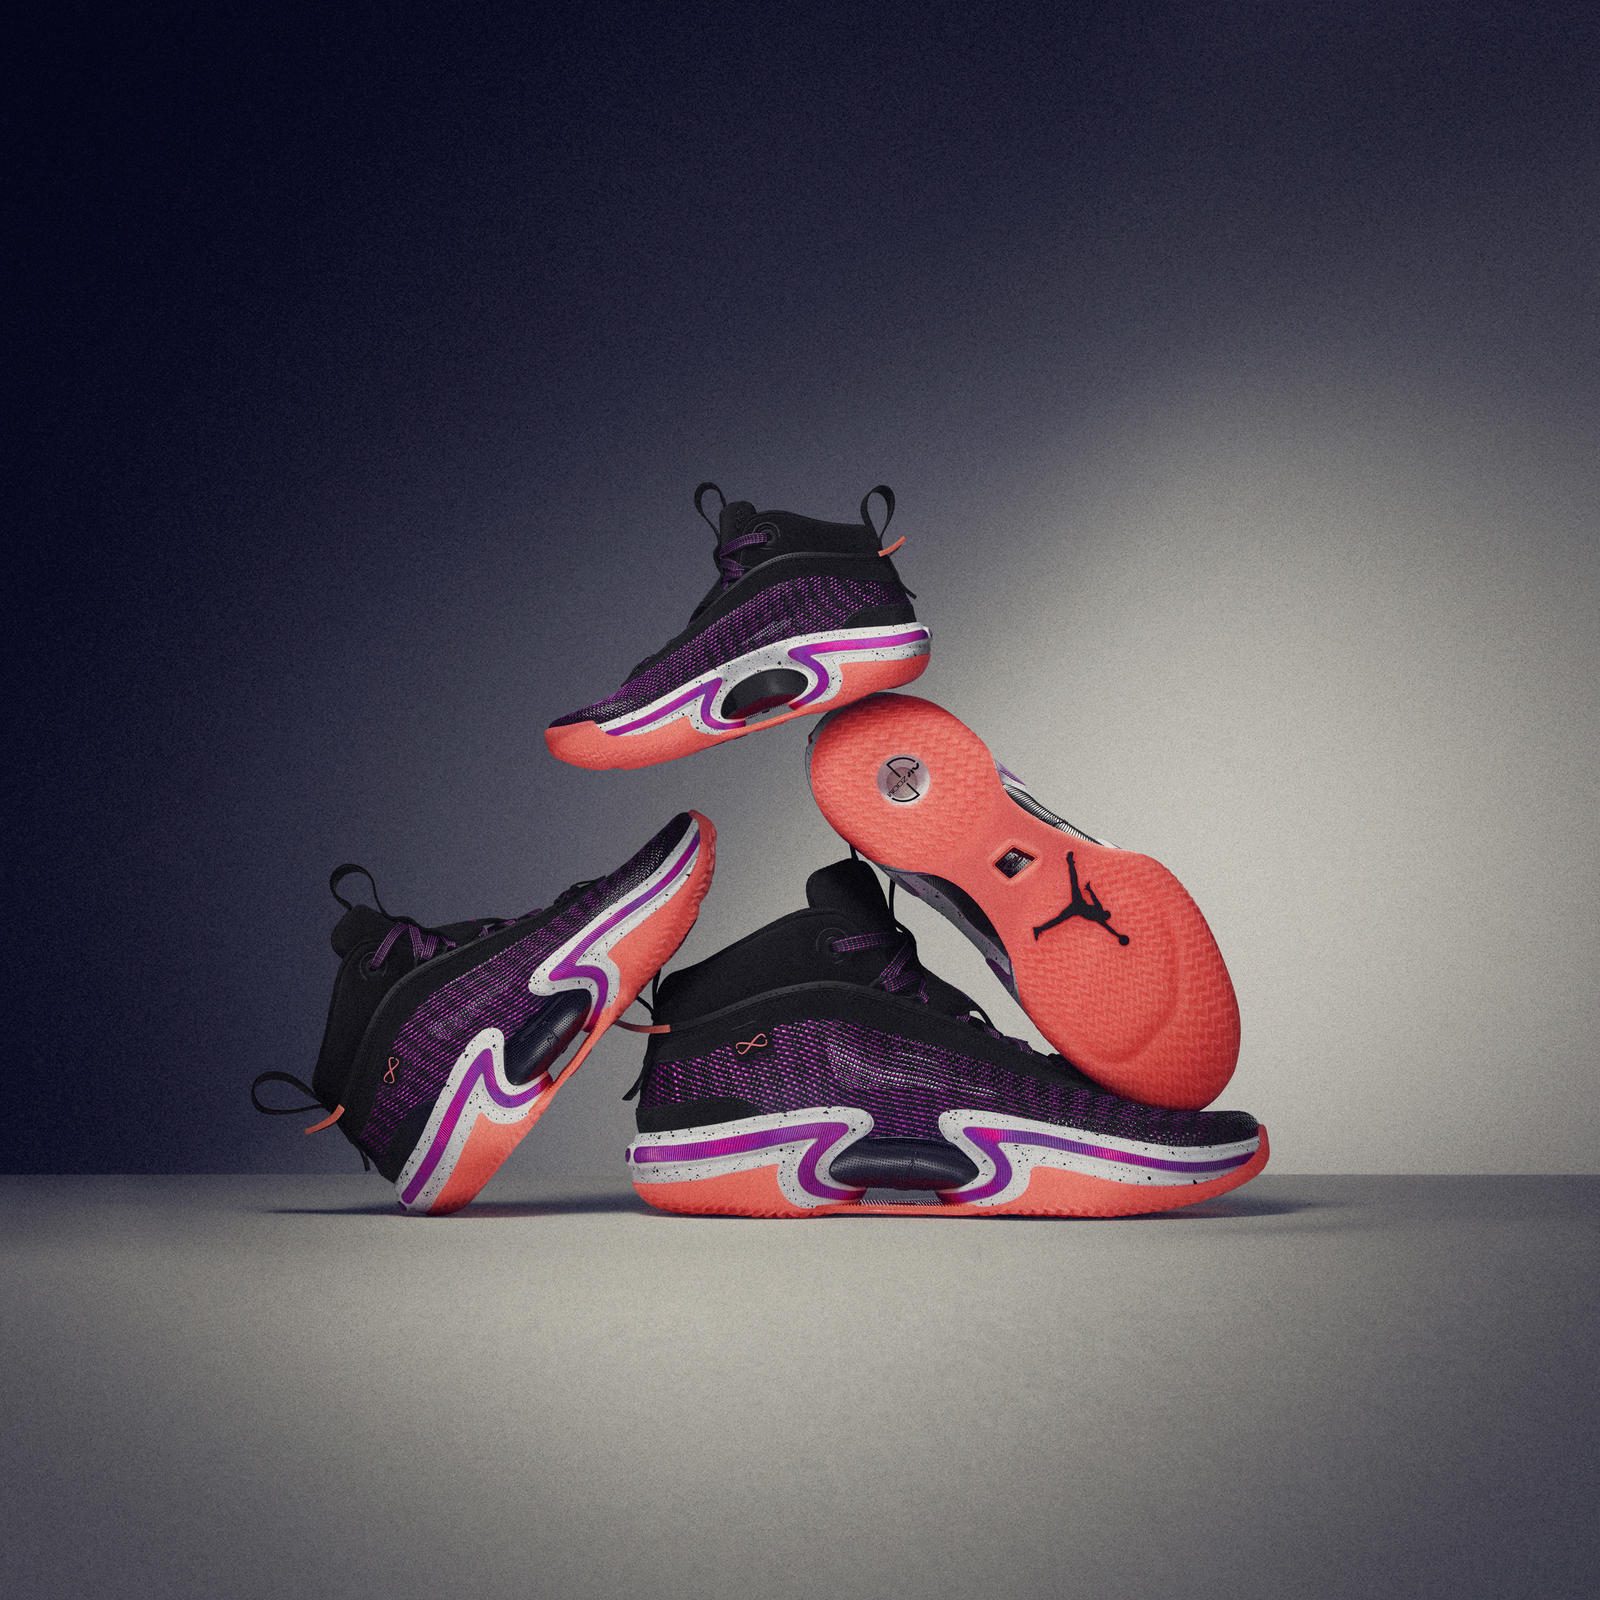 LOOK: Jordan Brand unveils Air Jordan XXXVI